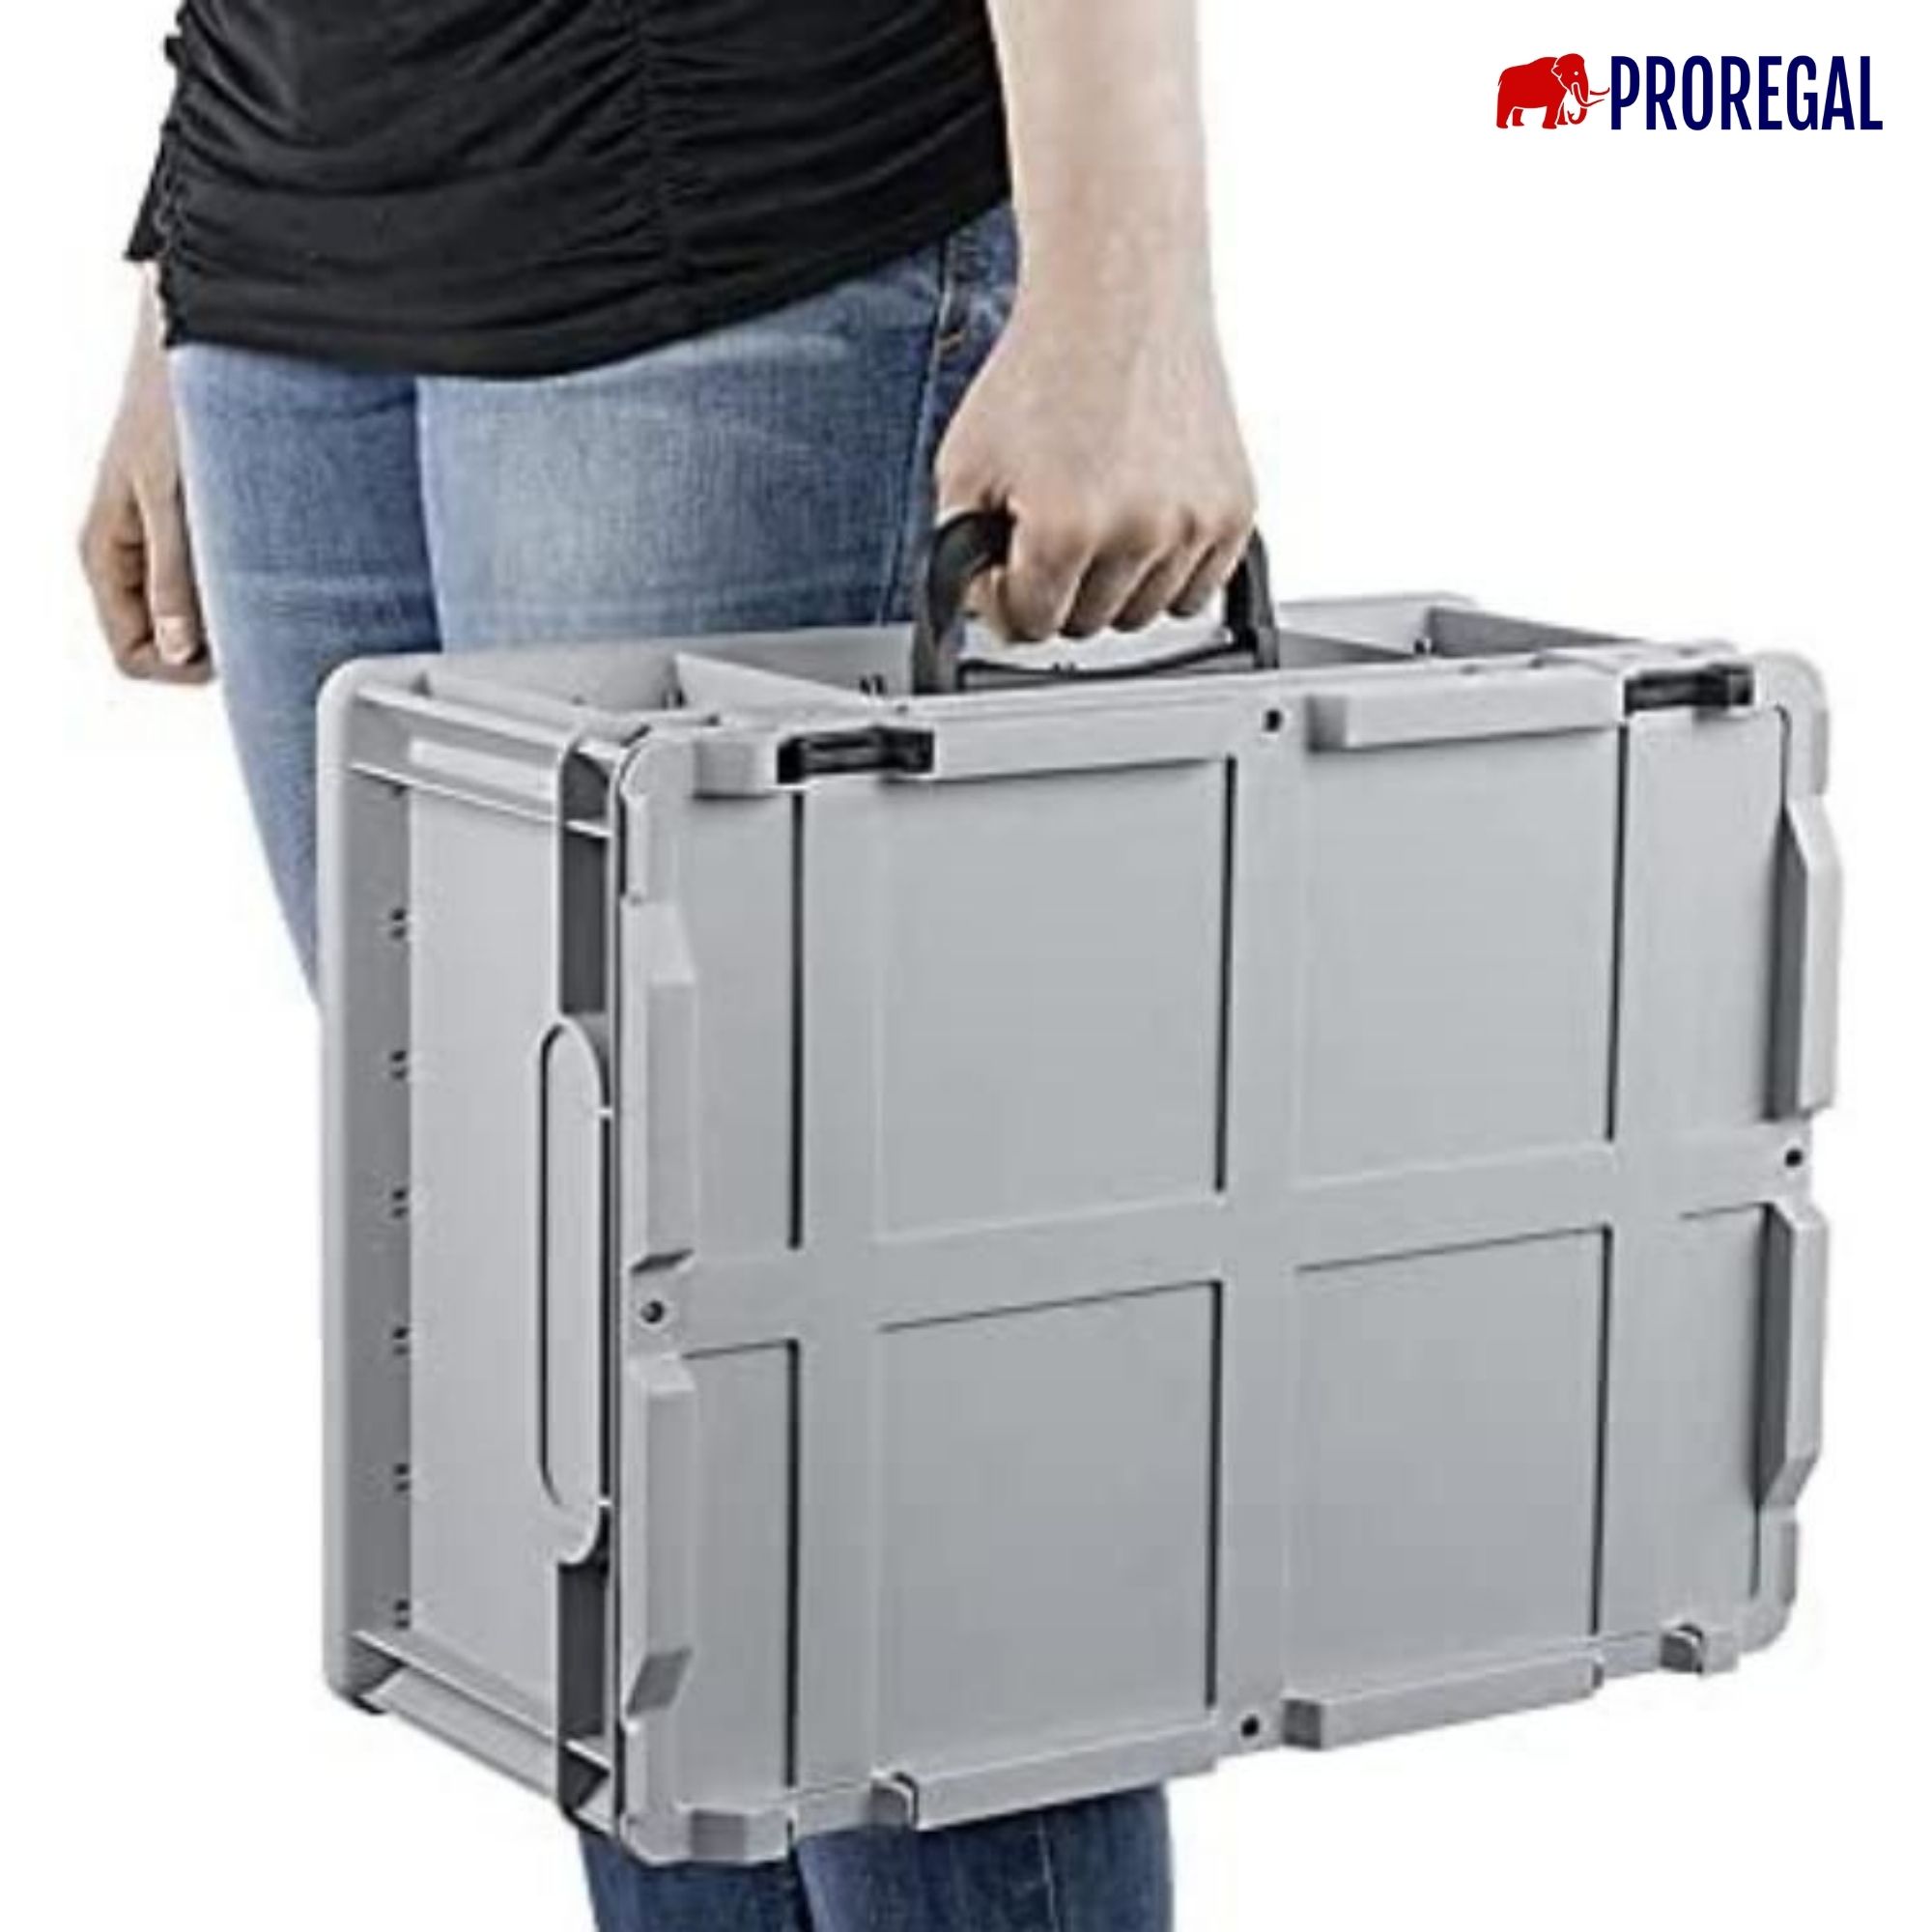 SuperSparSet 2x Eurobox NextGen Portable mit Rasterschaumstoff & Schaumstoffeinlage | HxBxT 33,5x40x60cm | 65 Liter | Eurobehälter, Transportbox, Transportbehälter, Stapelbehälter